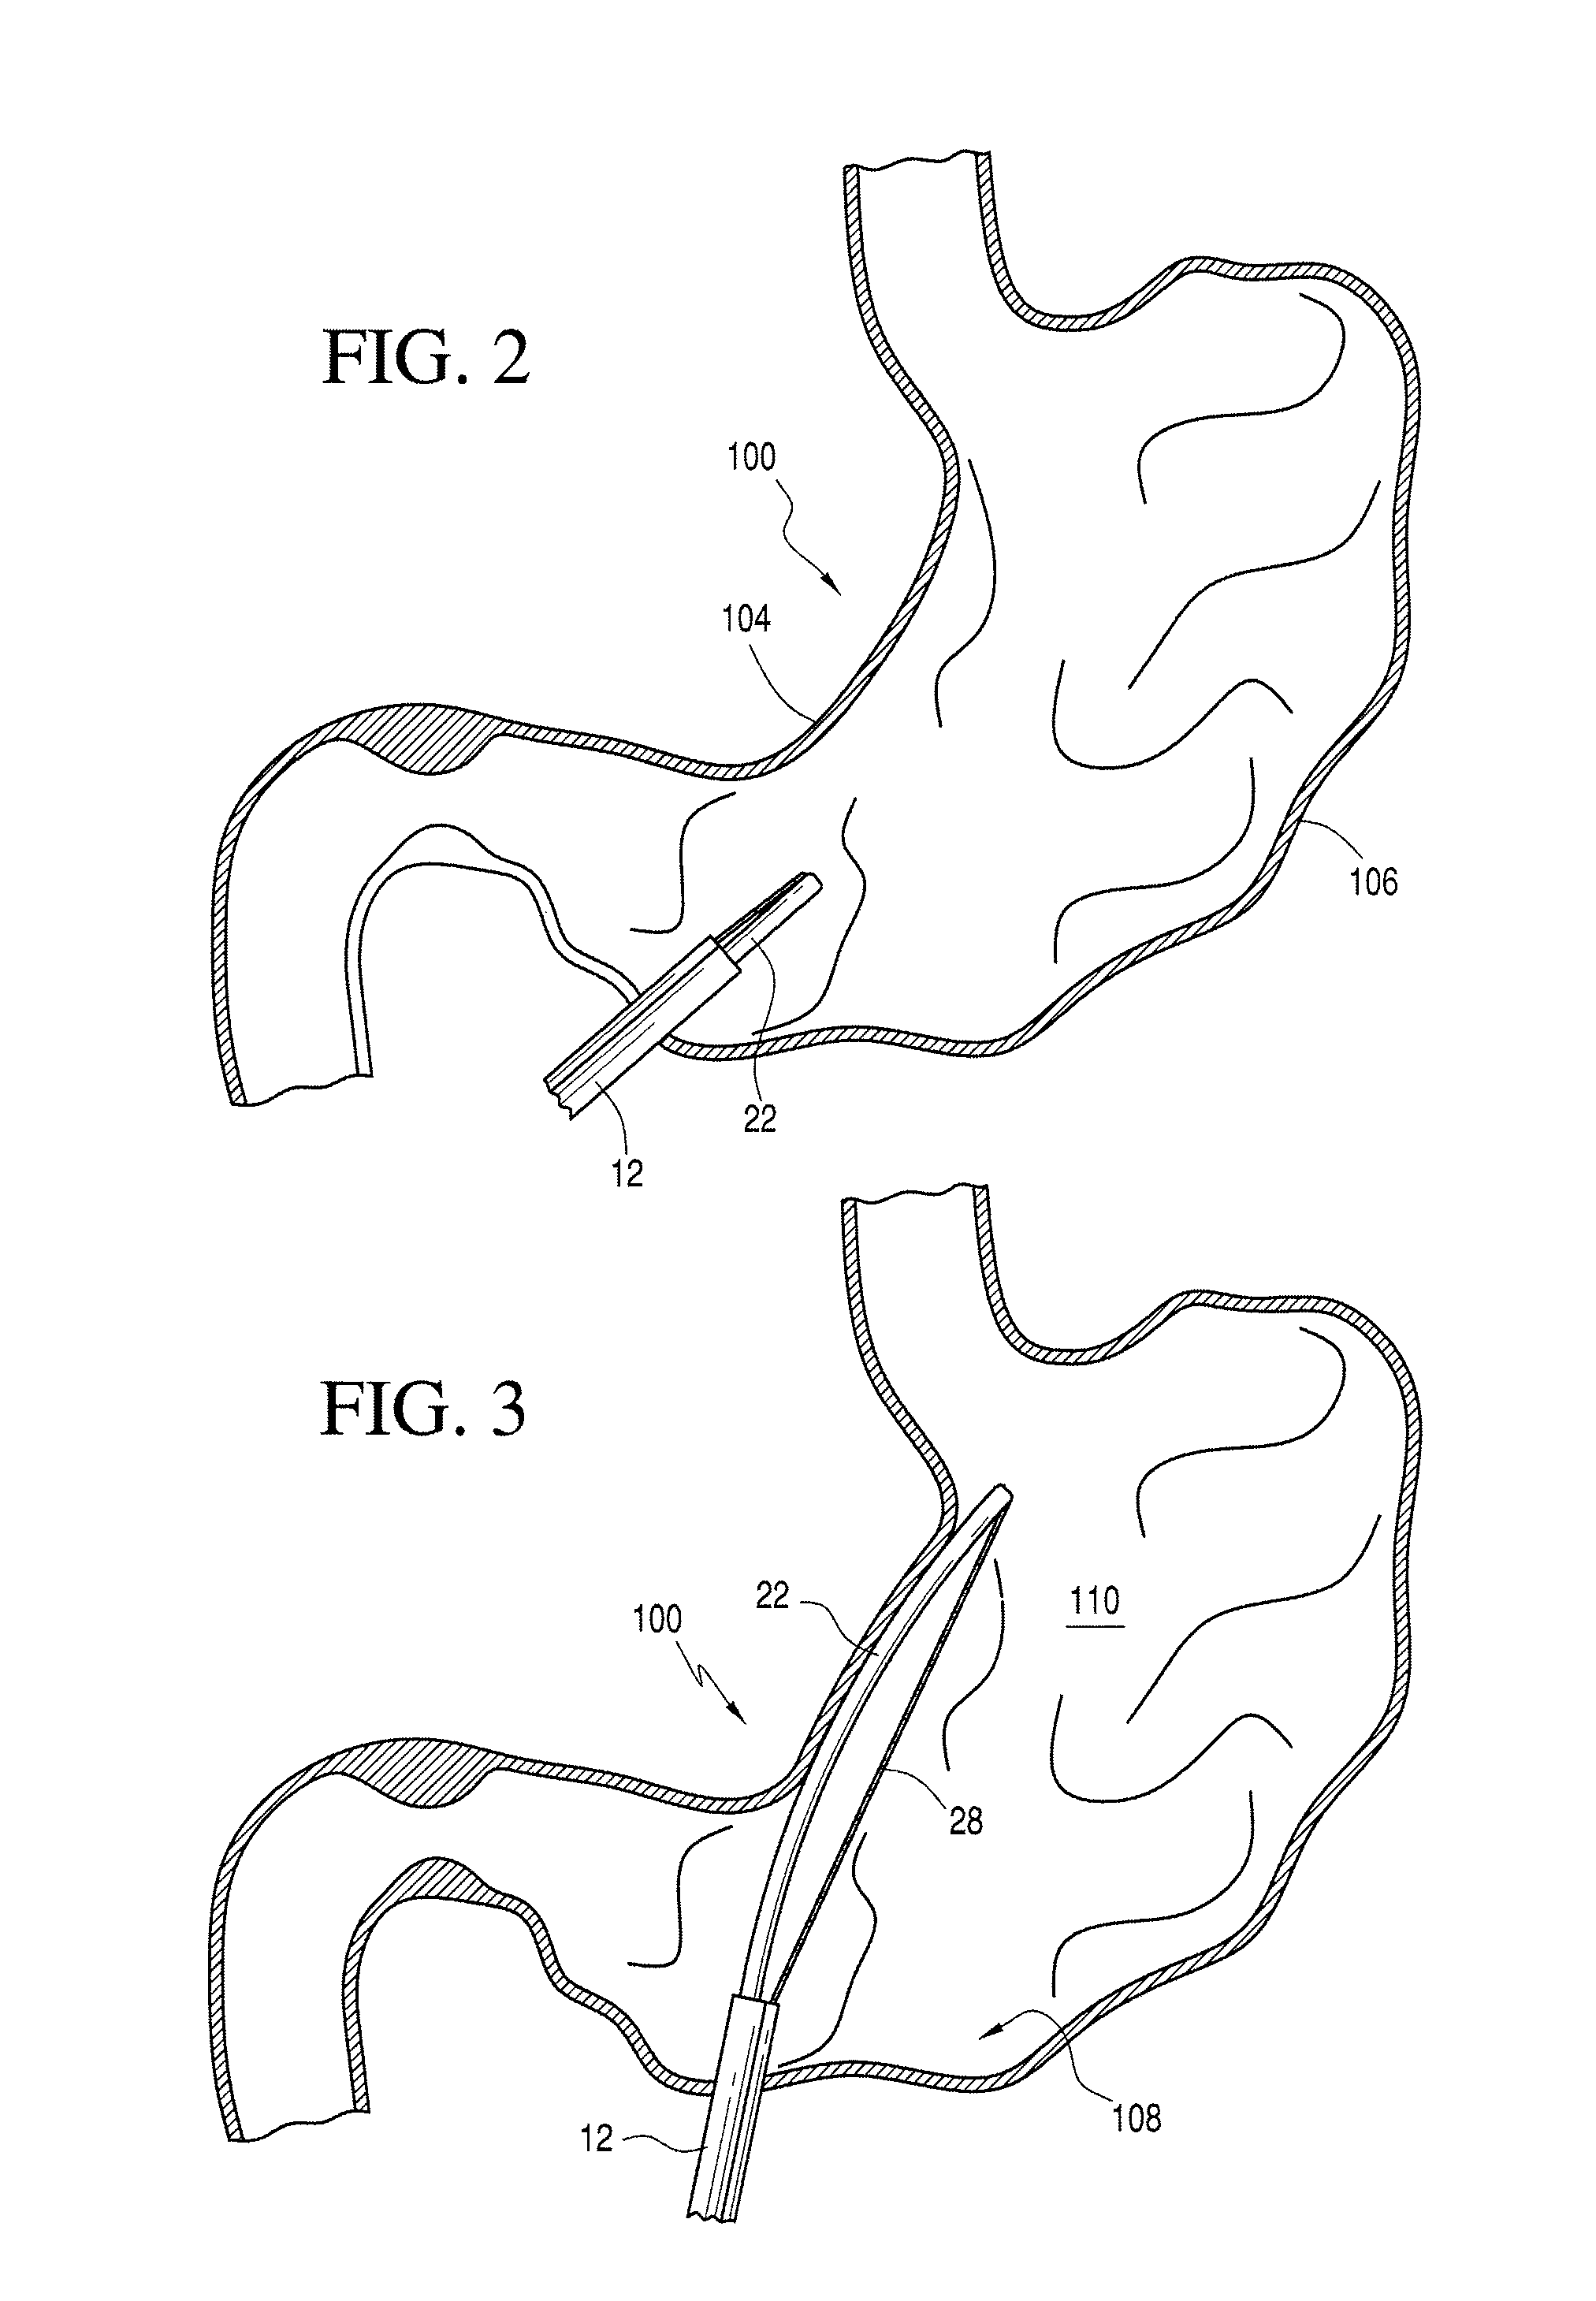 Gastric coil manipulator